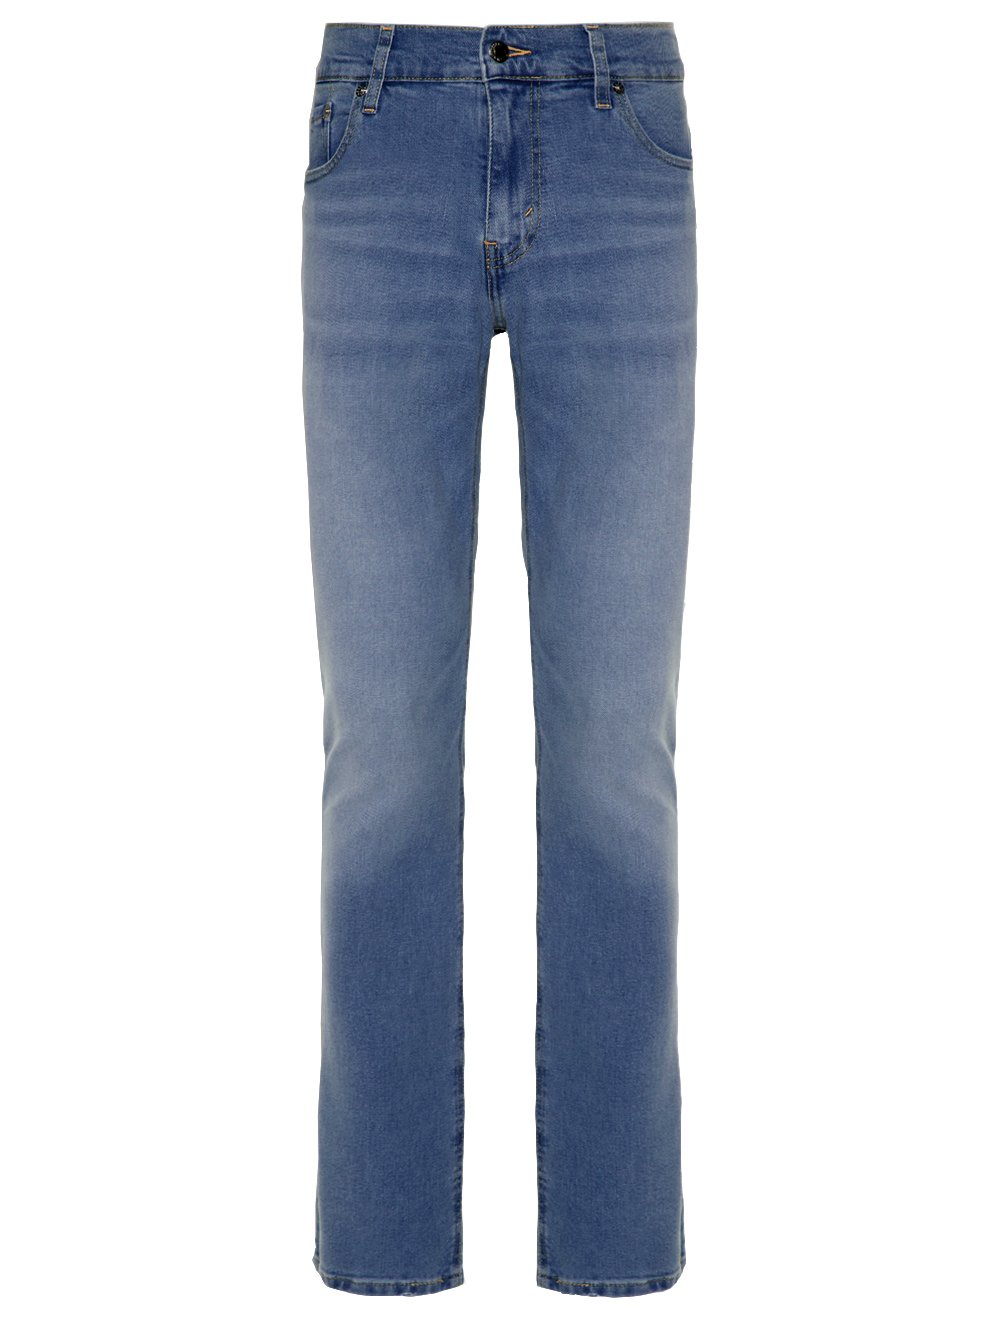 Calça Levis Jeans Masculina 511 Slim Stretch Matte Azul